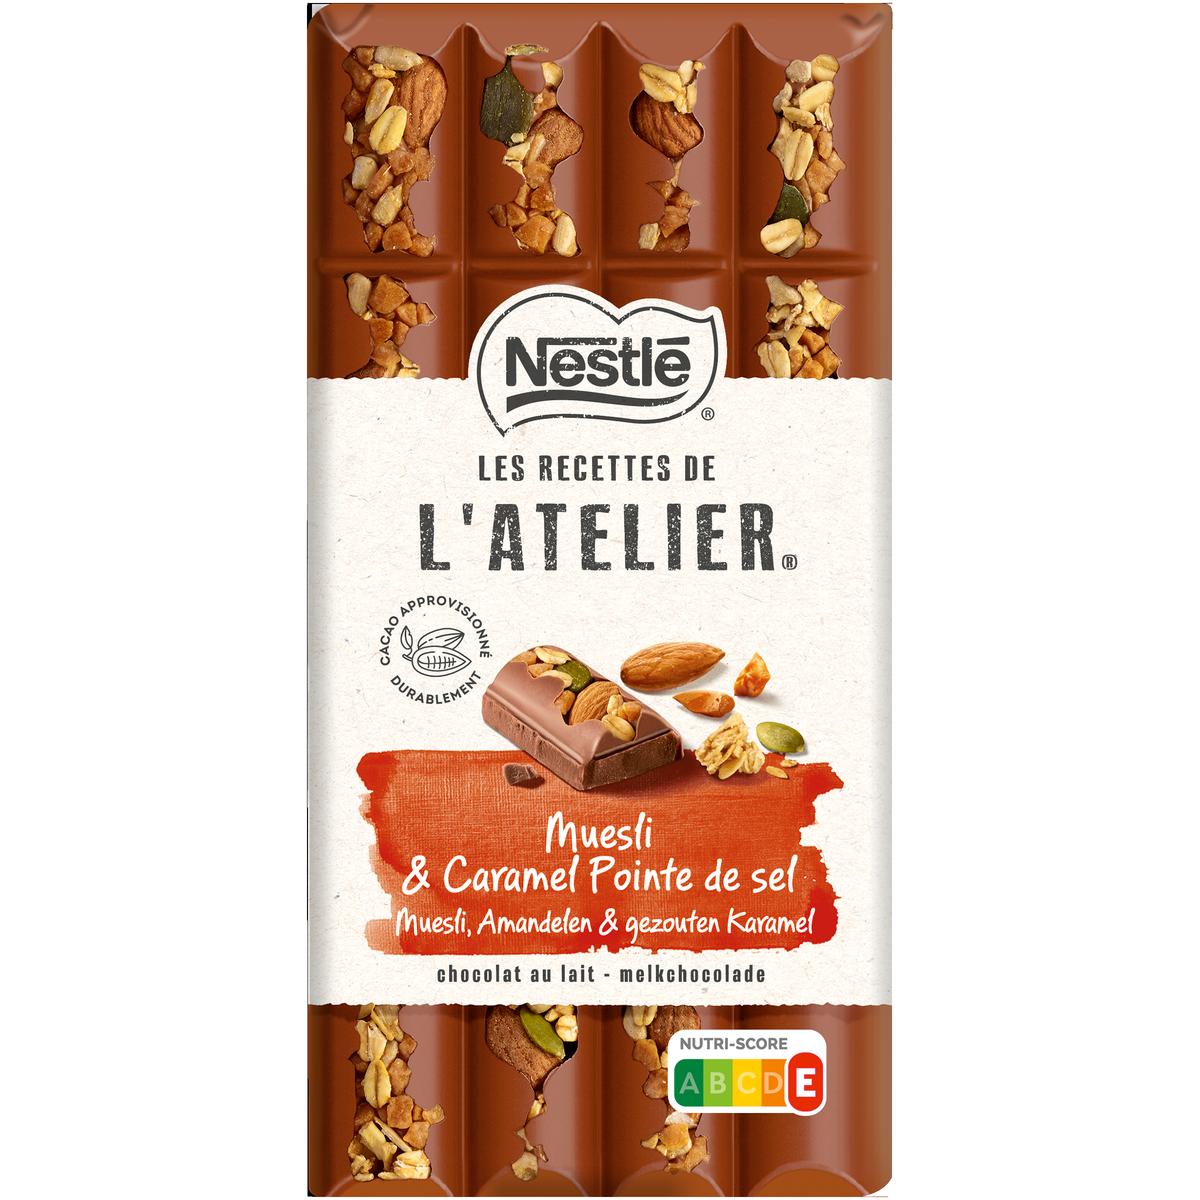 Nestlé Les Recettes de l'Atelier Chocolat au lait muesli amandes